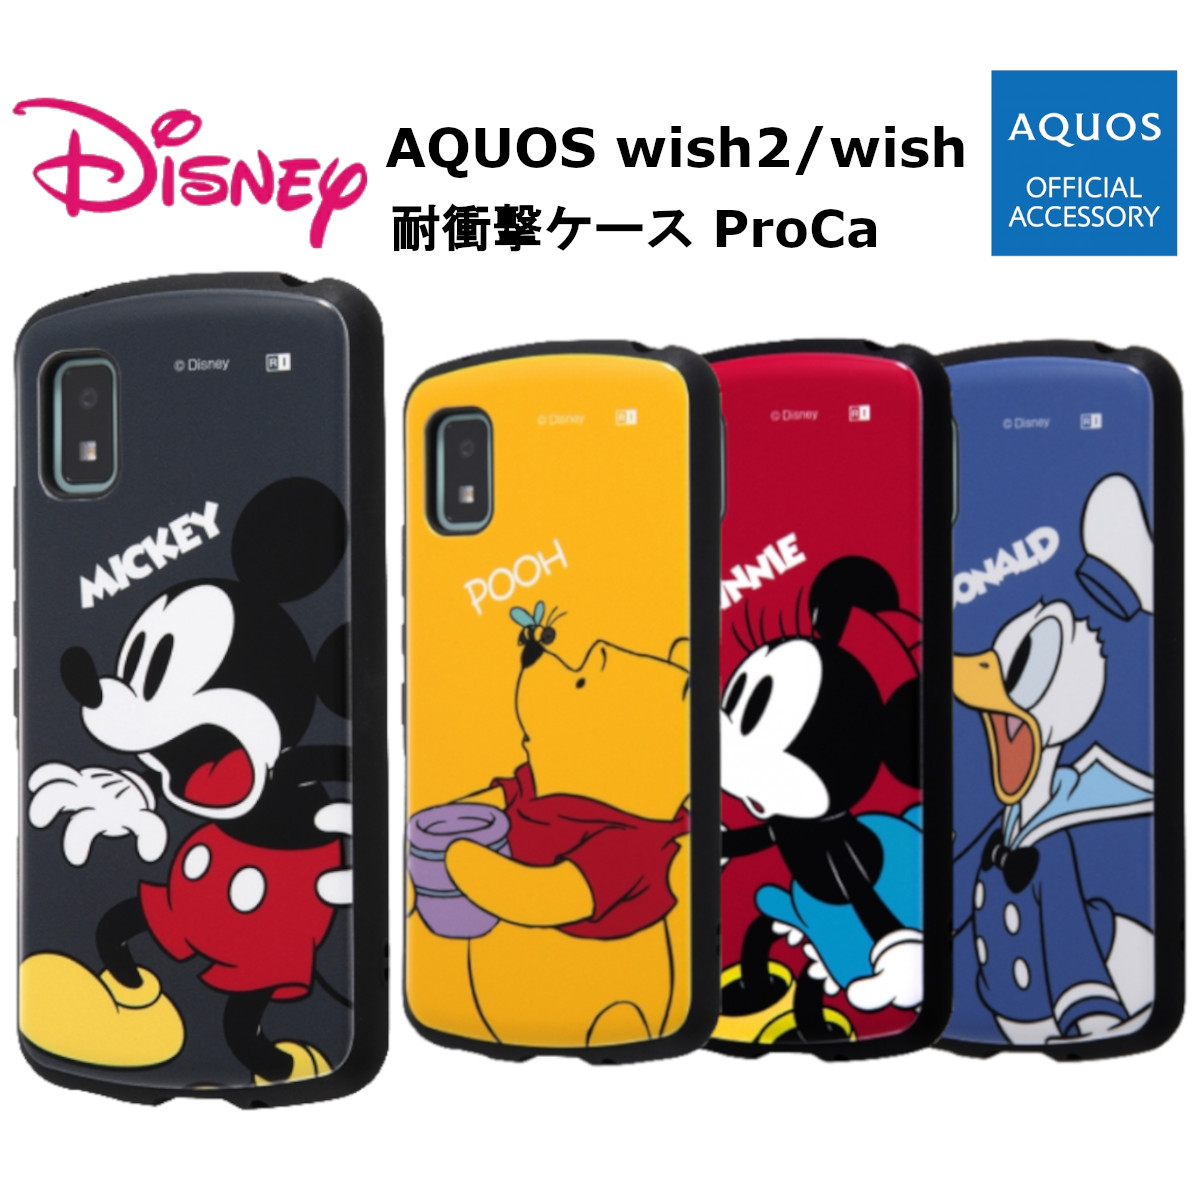 AQUOS wish2 wish ケース カバー AQUOSwish2 ディズニー 耐衝撃ケース ミッキーマウス ミニーマウス ドナルドダック プー スマホケース 携帯ケース docomo au